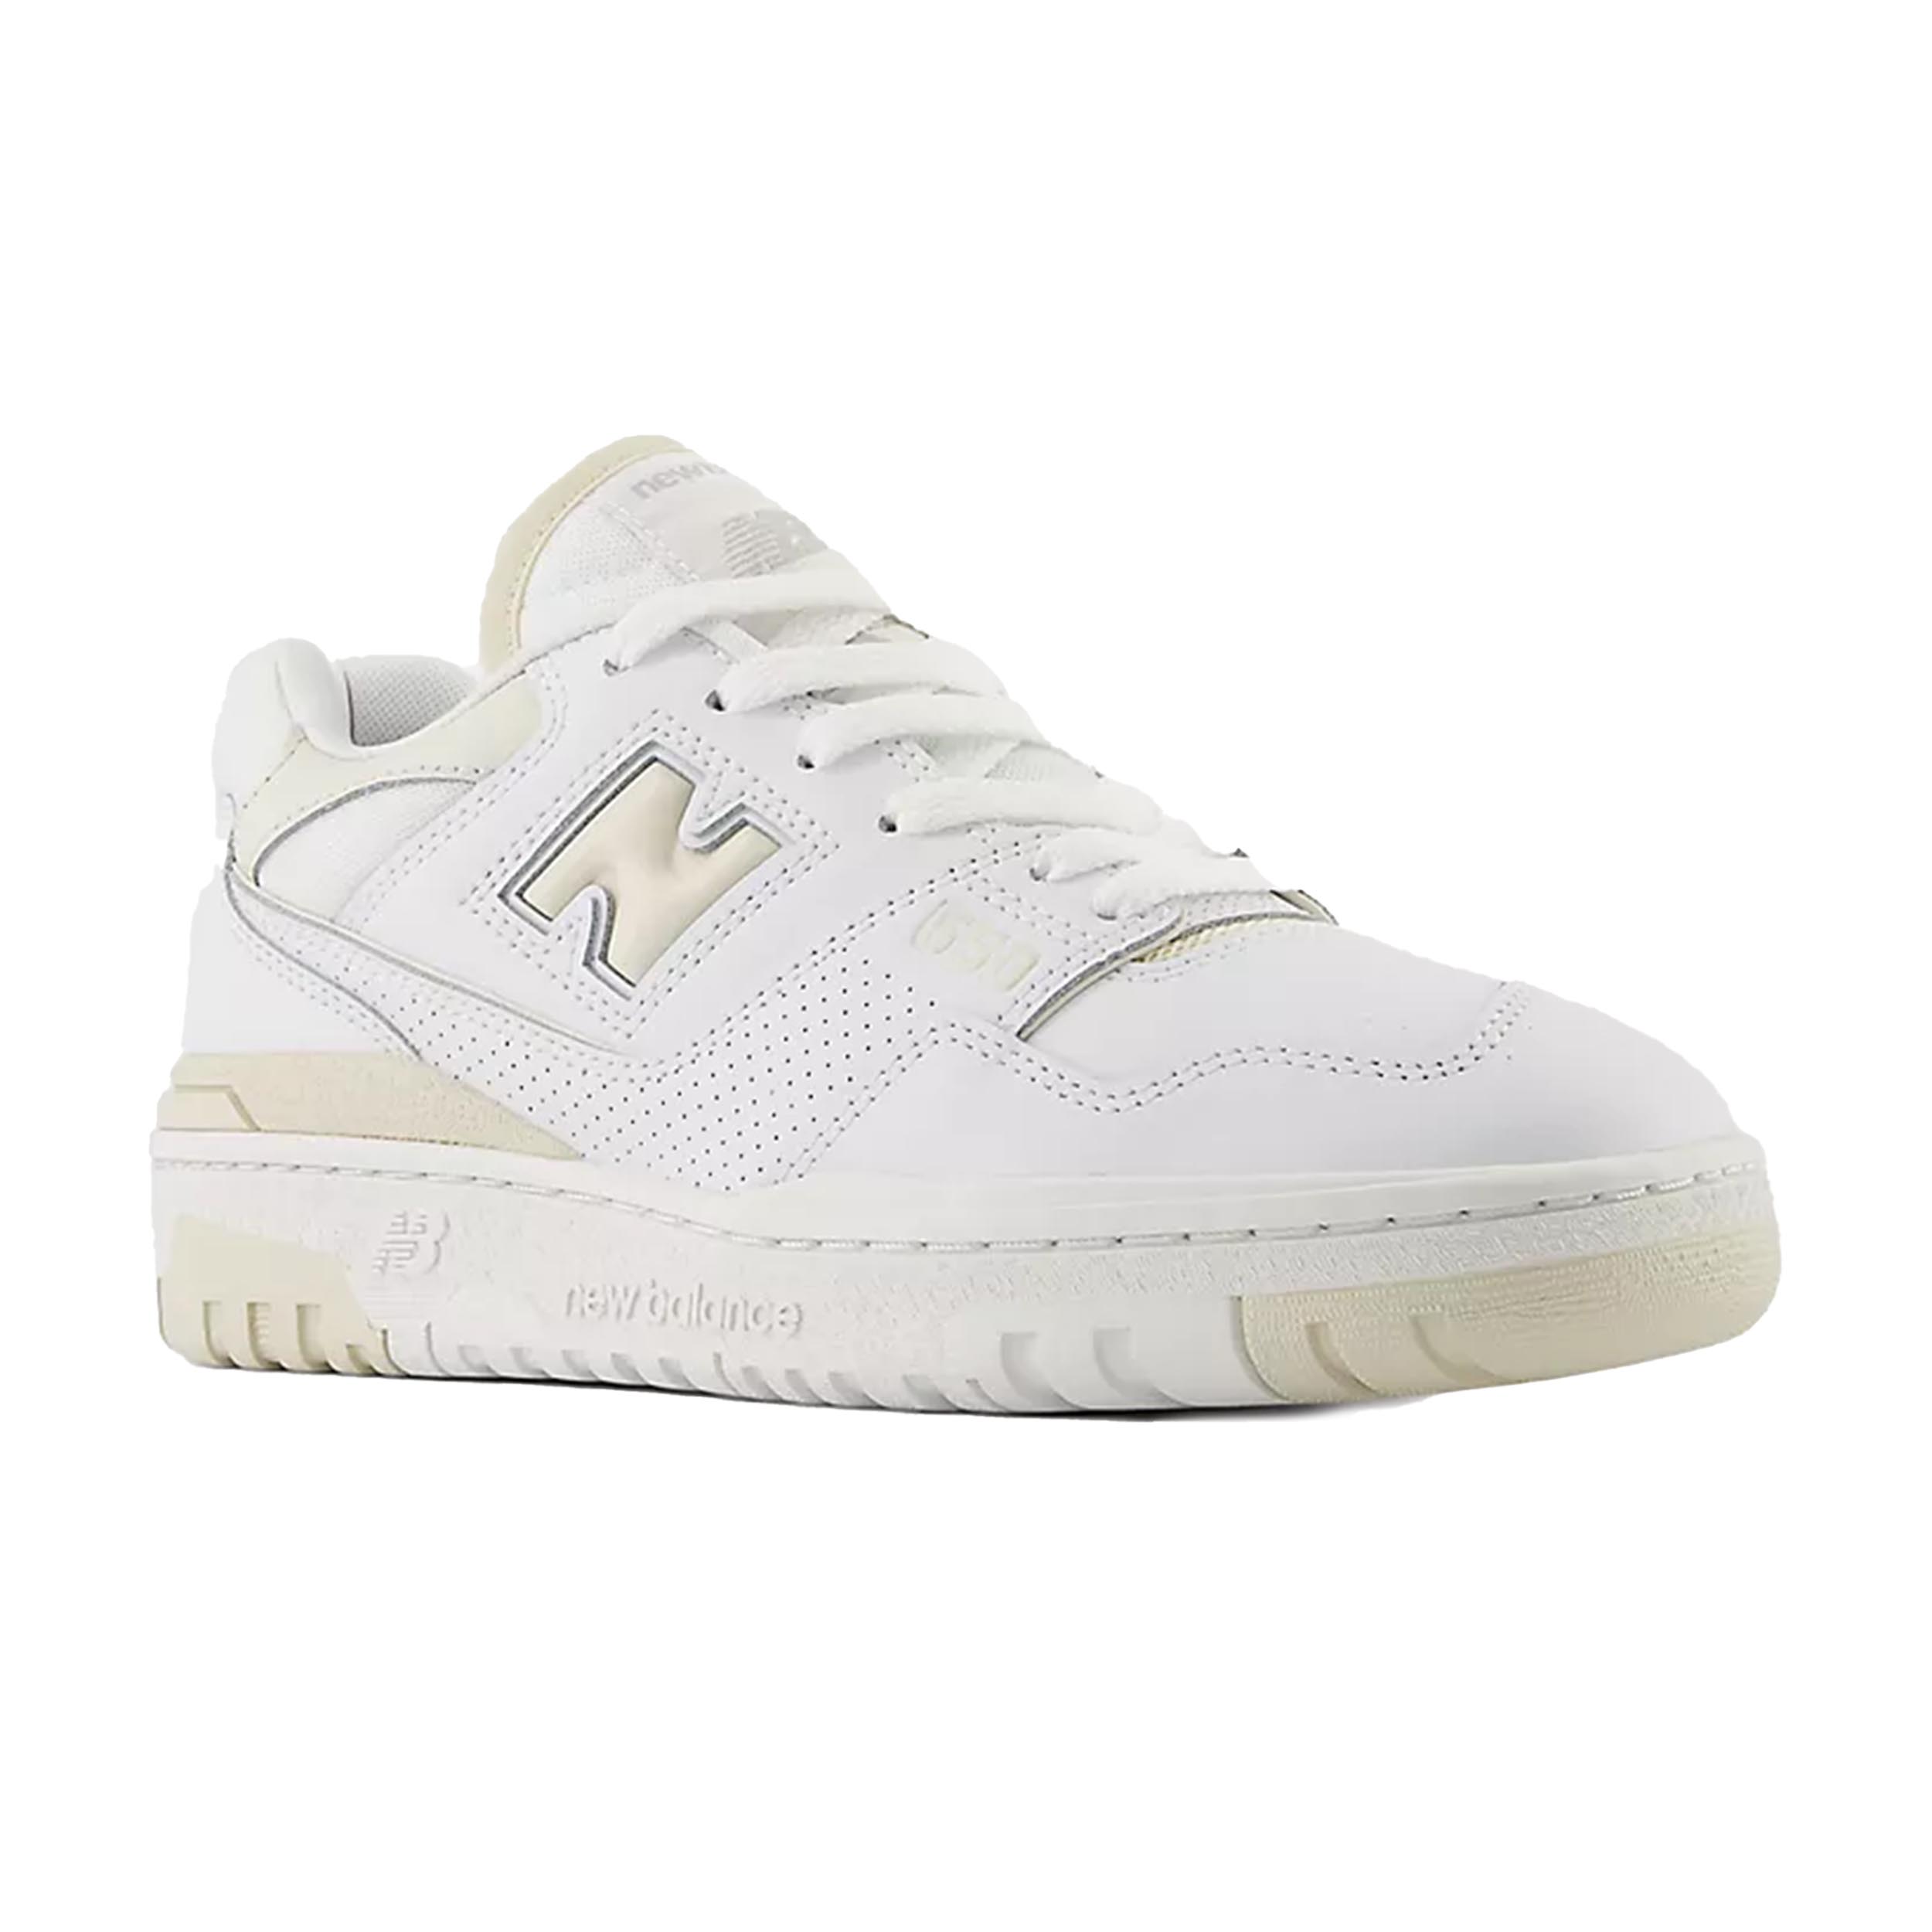 New Balance 550 Sneaker White/Linen